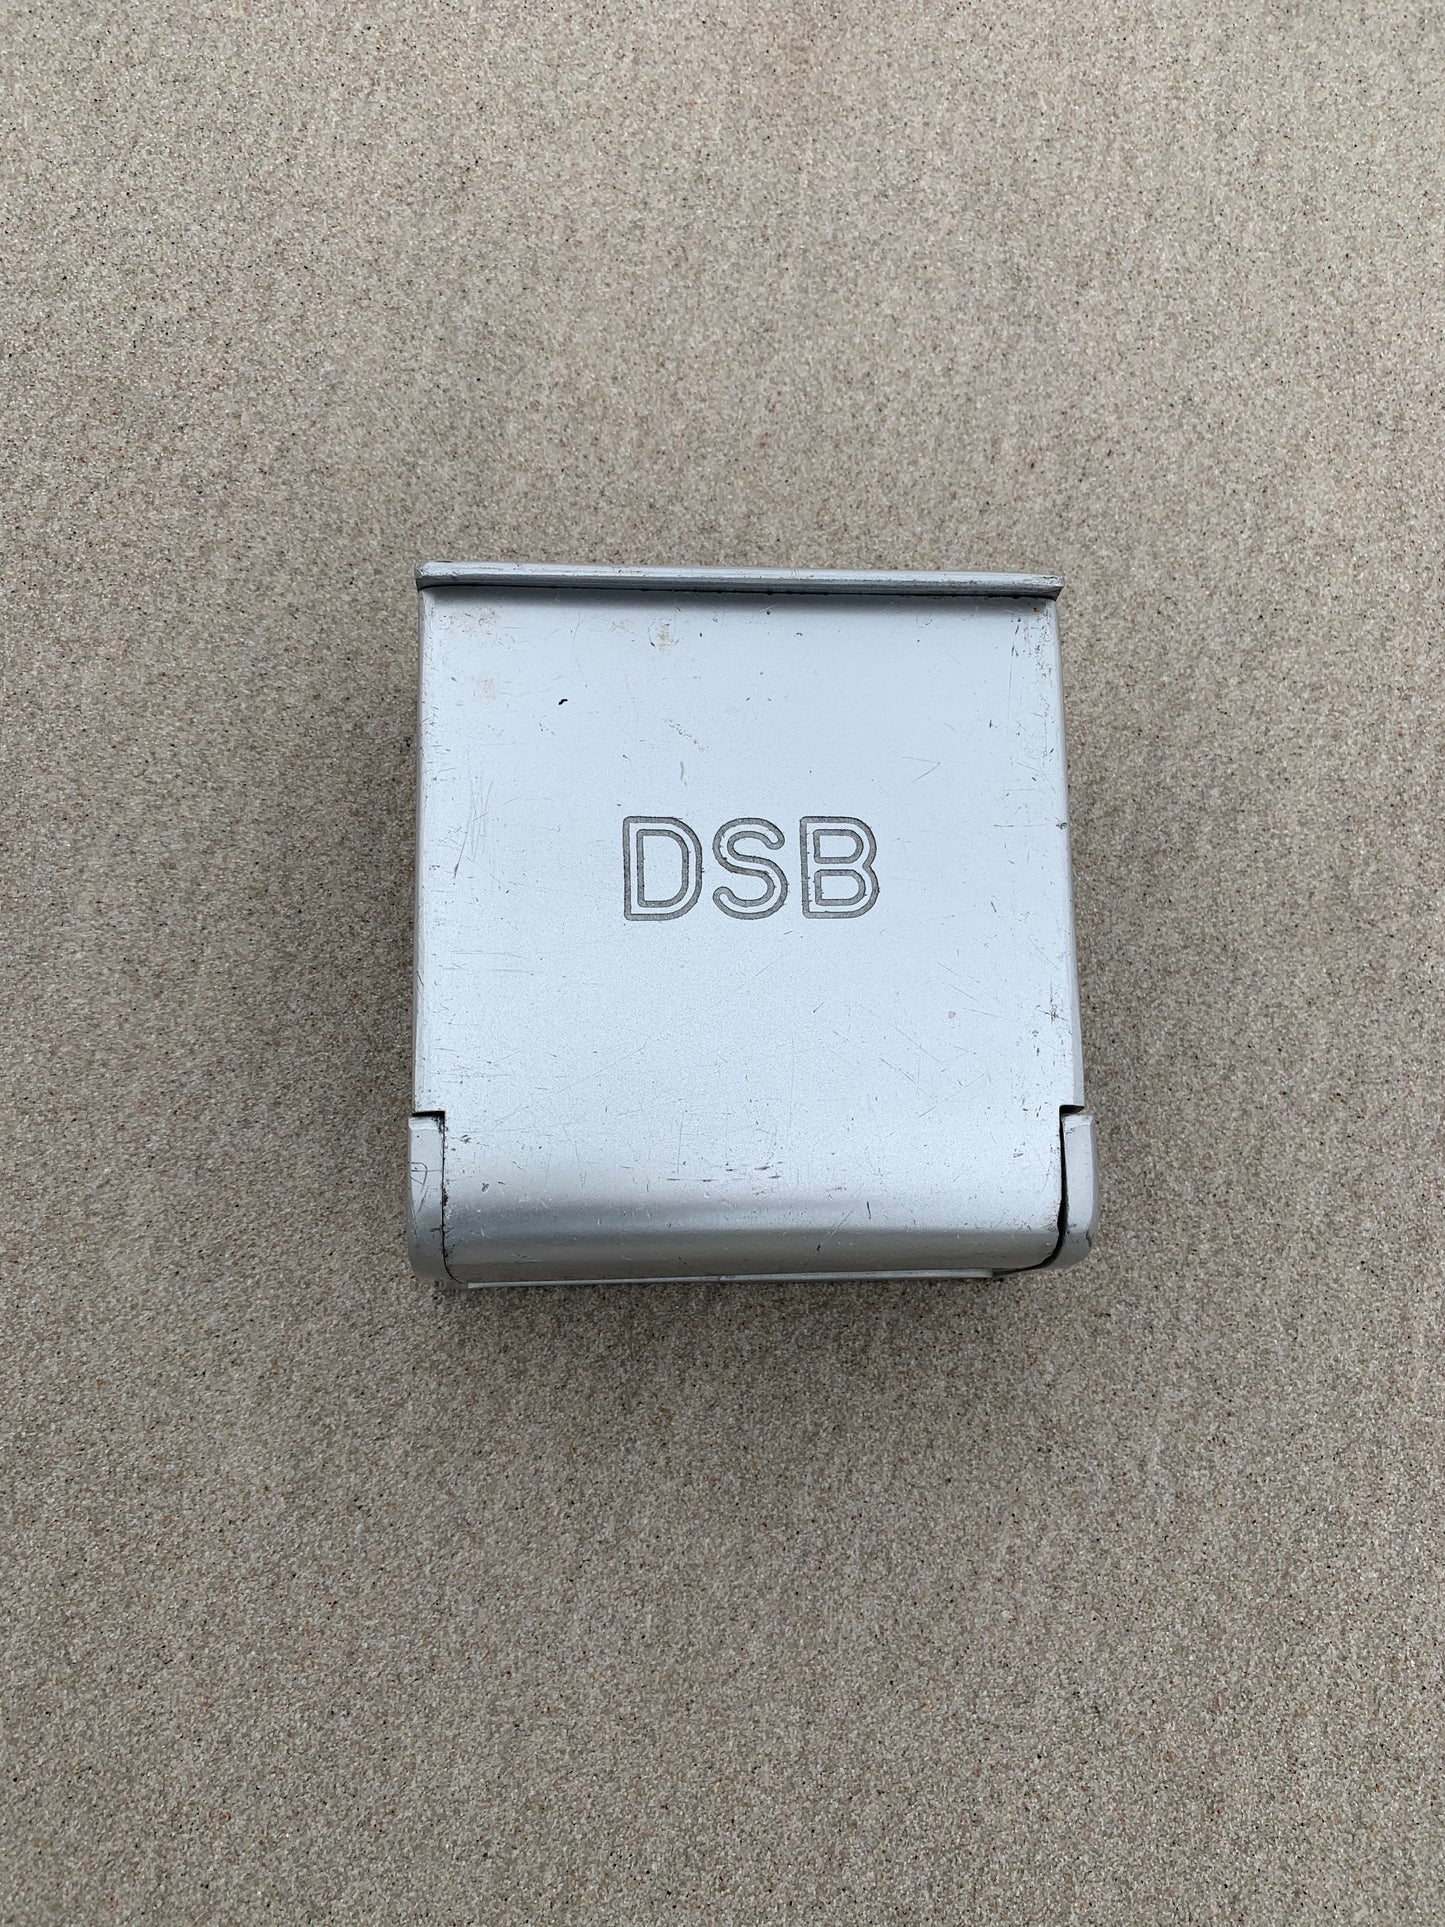 DSB Aschenbecher - Großes Modell